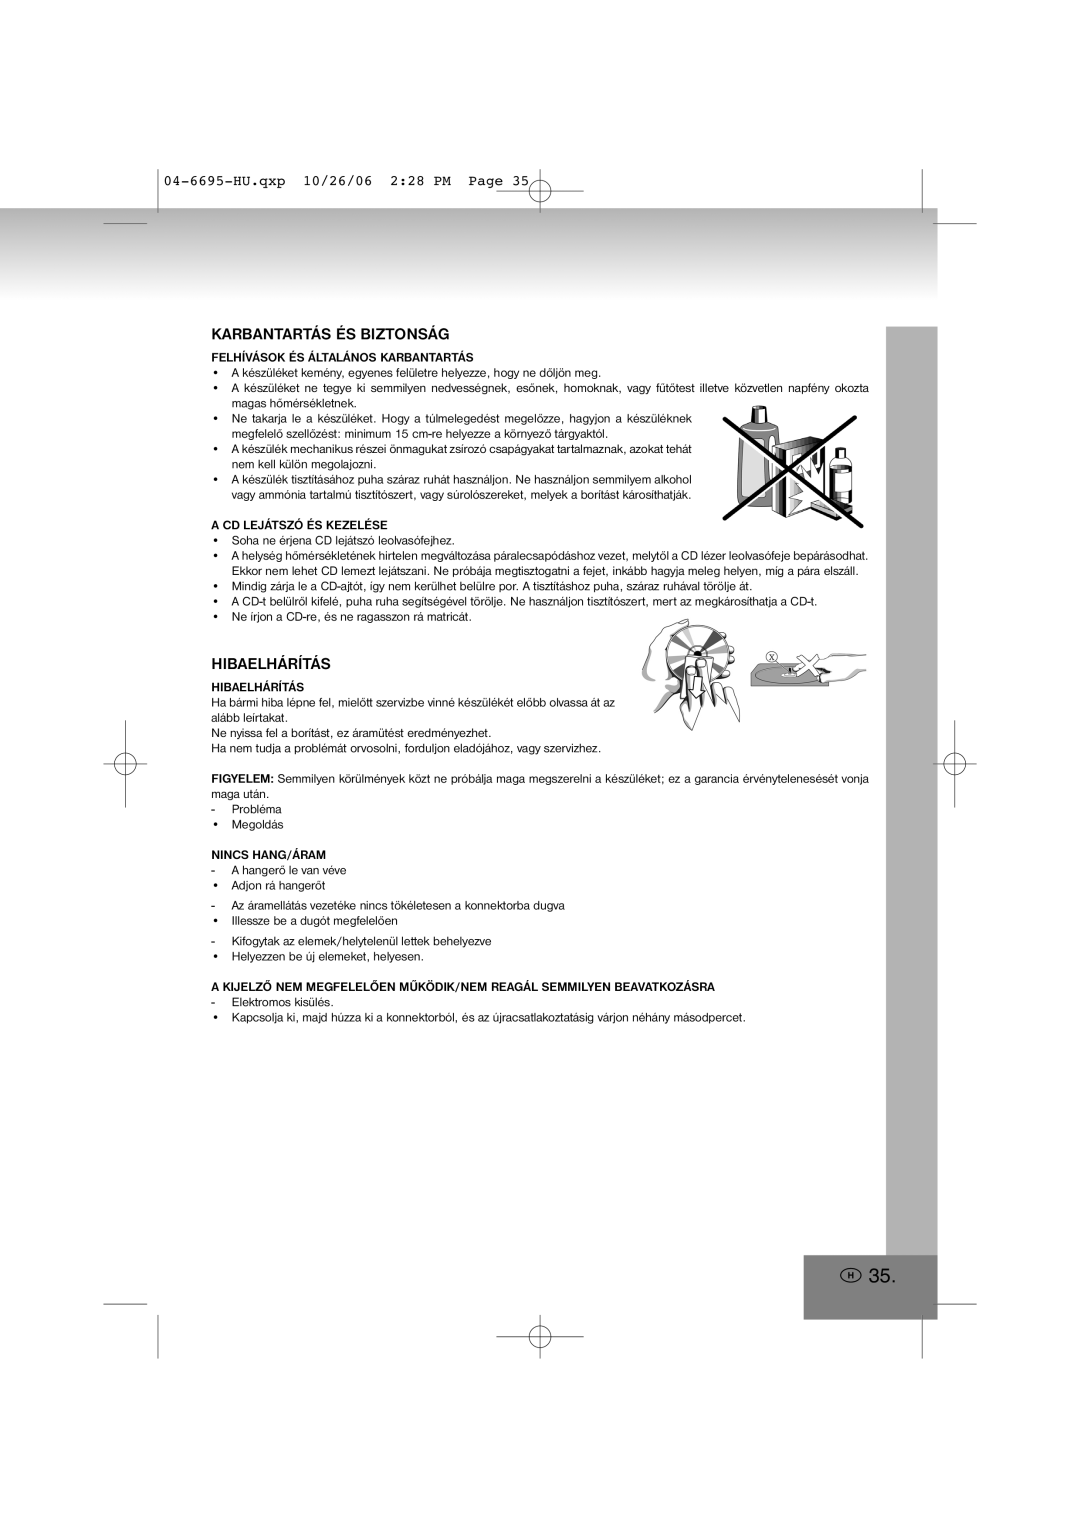 Elta manual Karbantartás És Biztonság, Hibaelhárítás, 04-6695-HU.qxp10/26/06 2 28 PM Page 